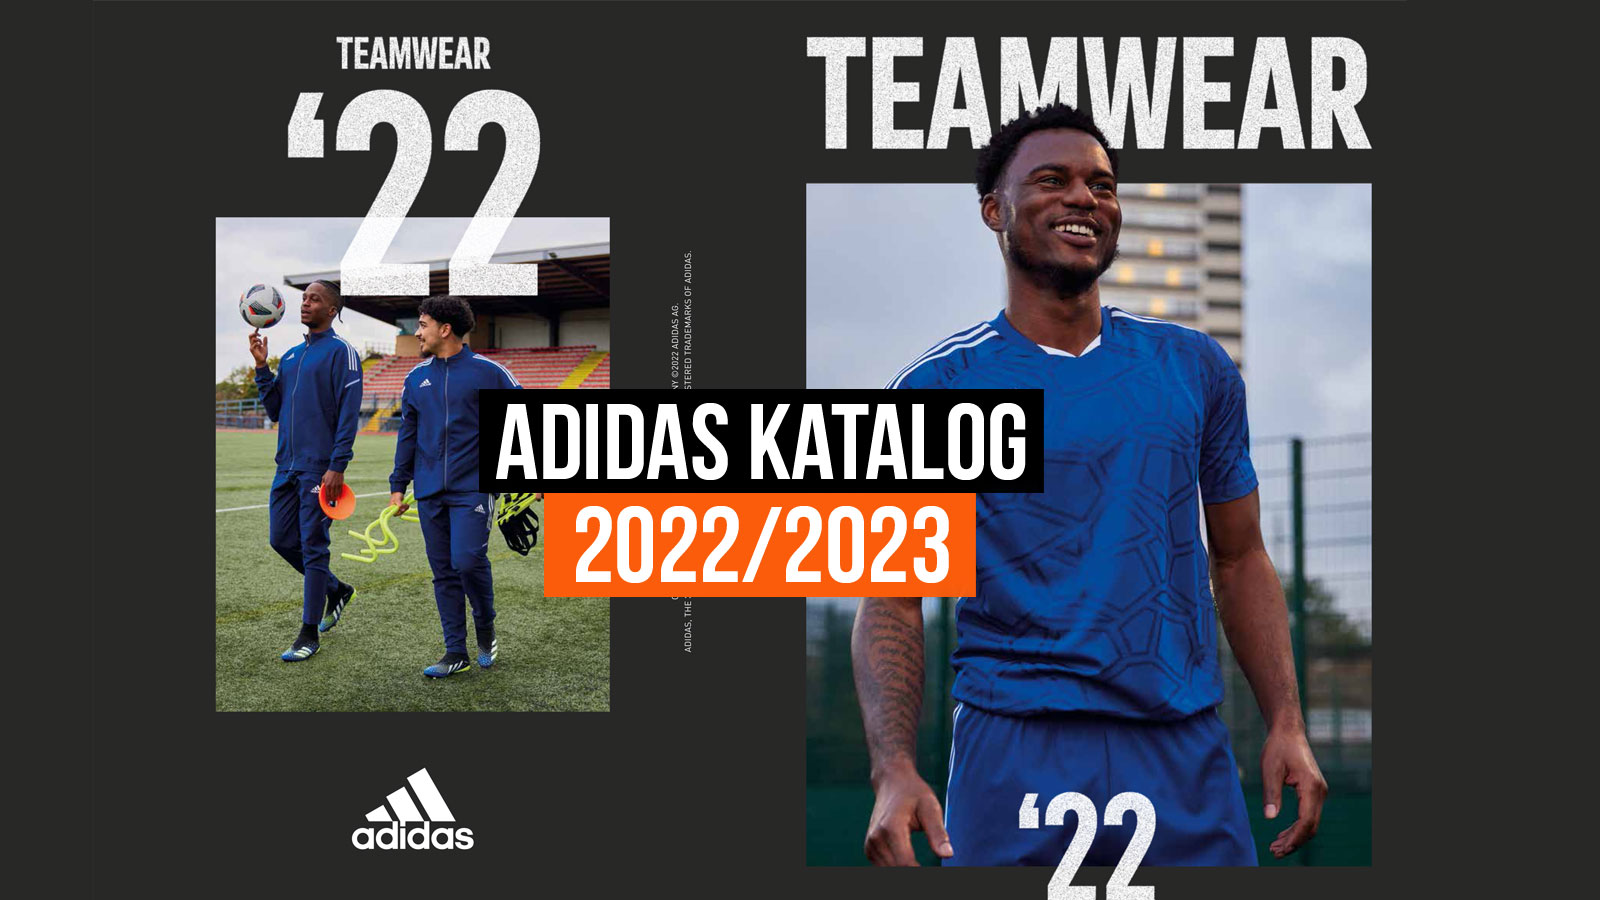 Adidas Catalog 2023 2023 Calendar